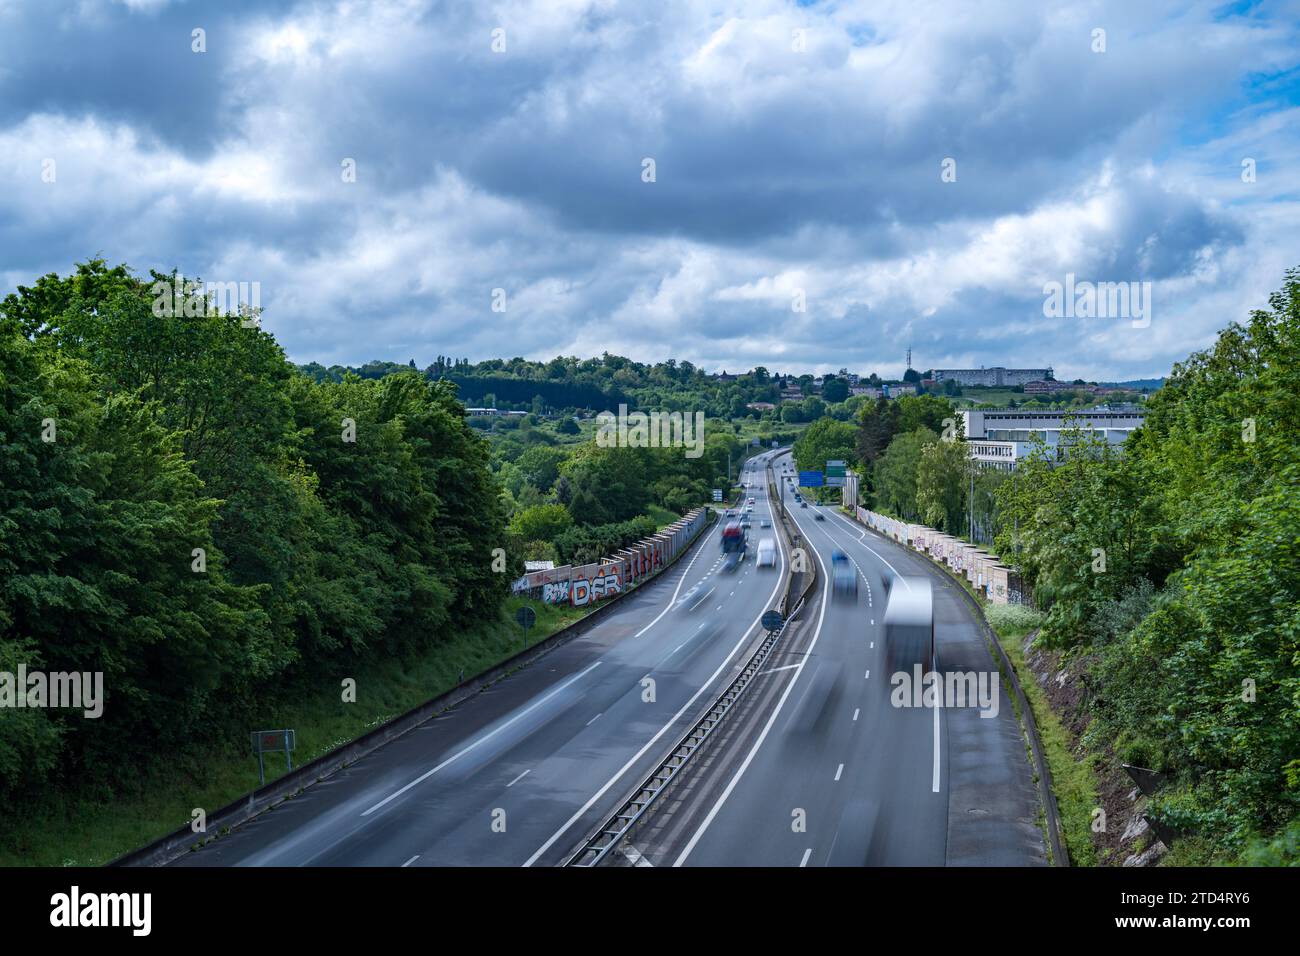 Autostrada A20 Limoges Trafic con sole, nuvole, ombre e alberi verdi Foto Stock